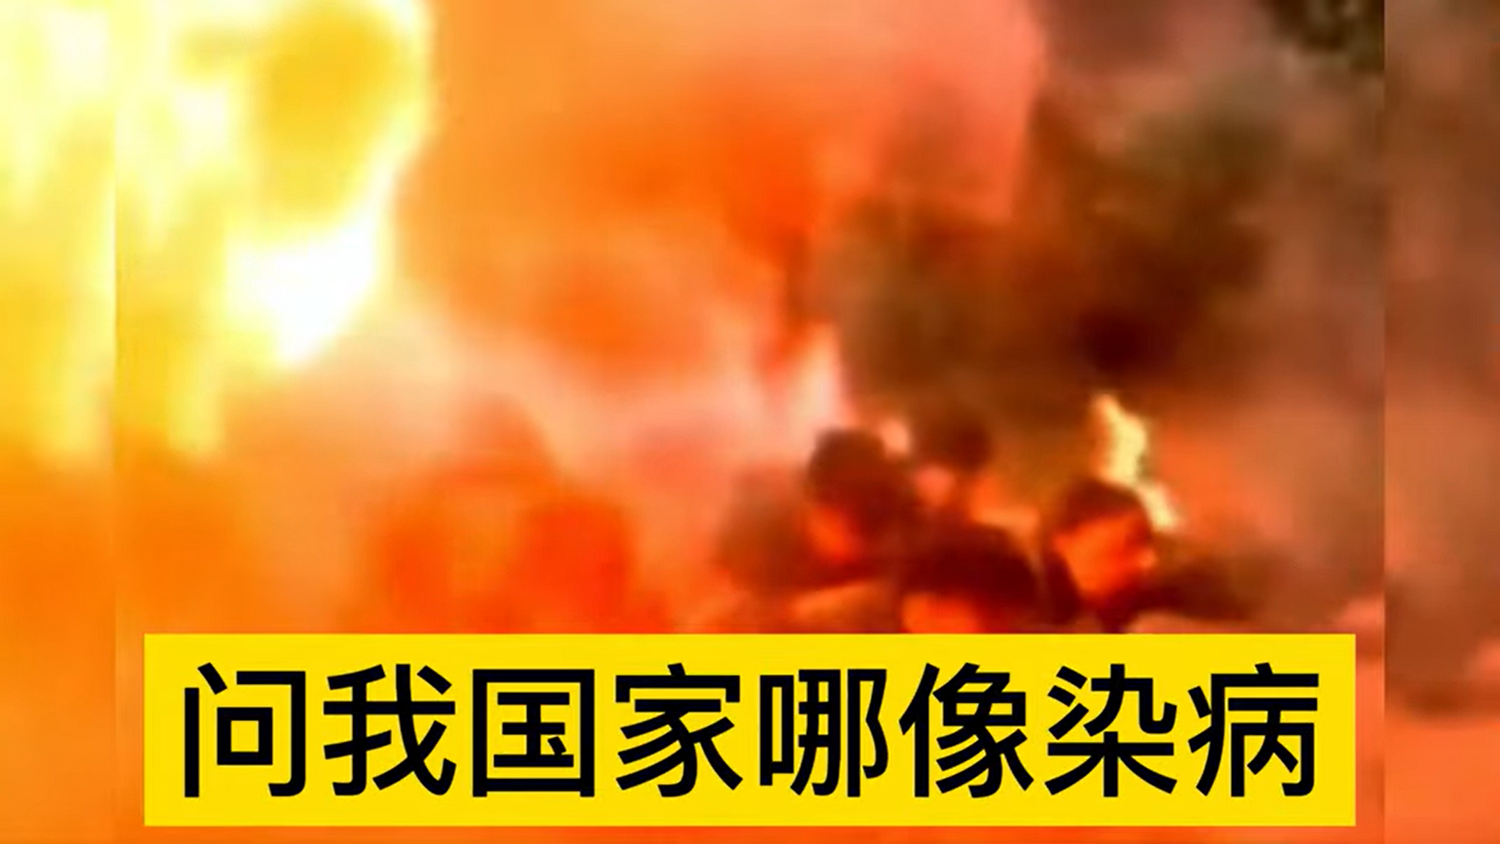 中國小學生被訓練要在火焰攻擊下無畏地繼續前進。   圖: 擷取自 xiang ma YouTube